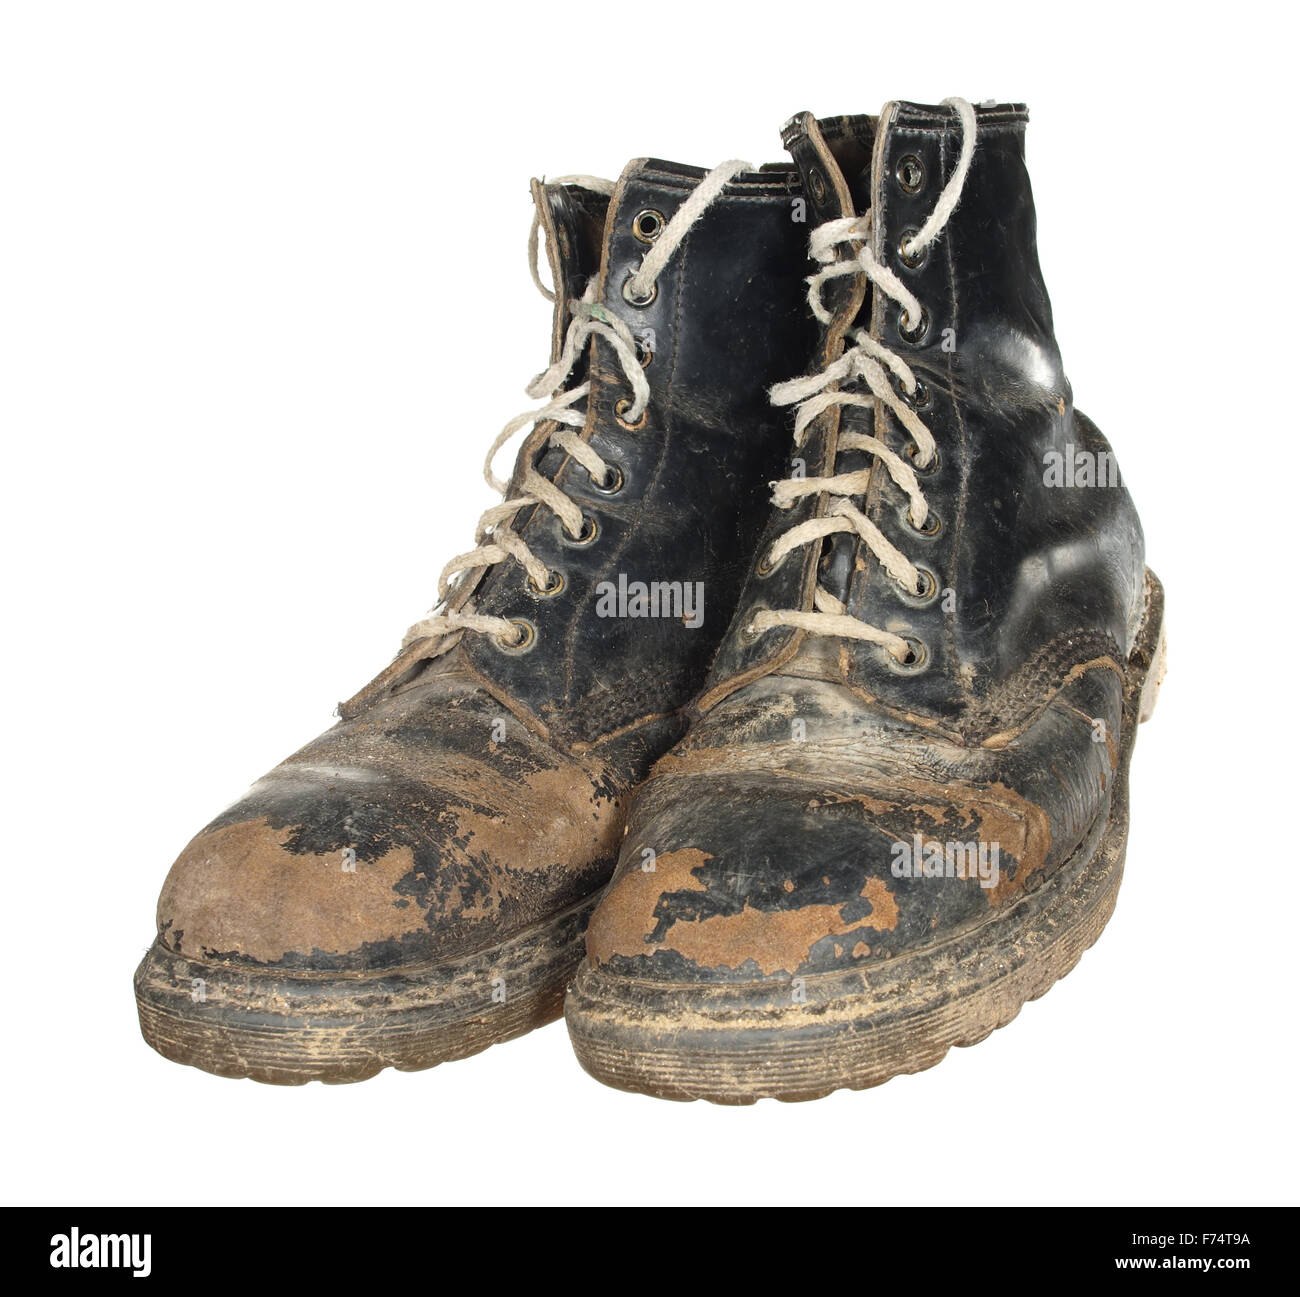 Worn out boots -Fotos und -Bildmaterial in hoher Auflösung – Alamy